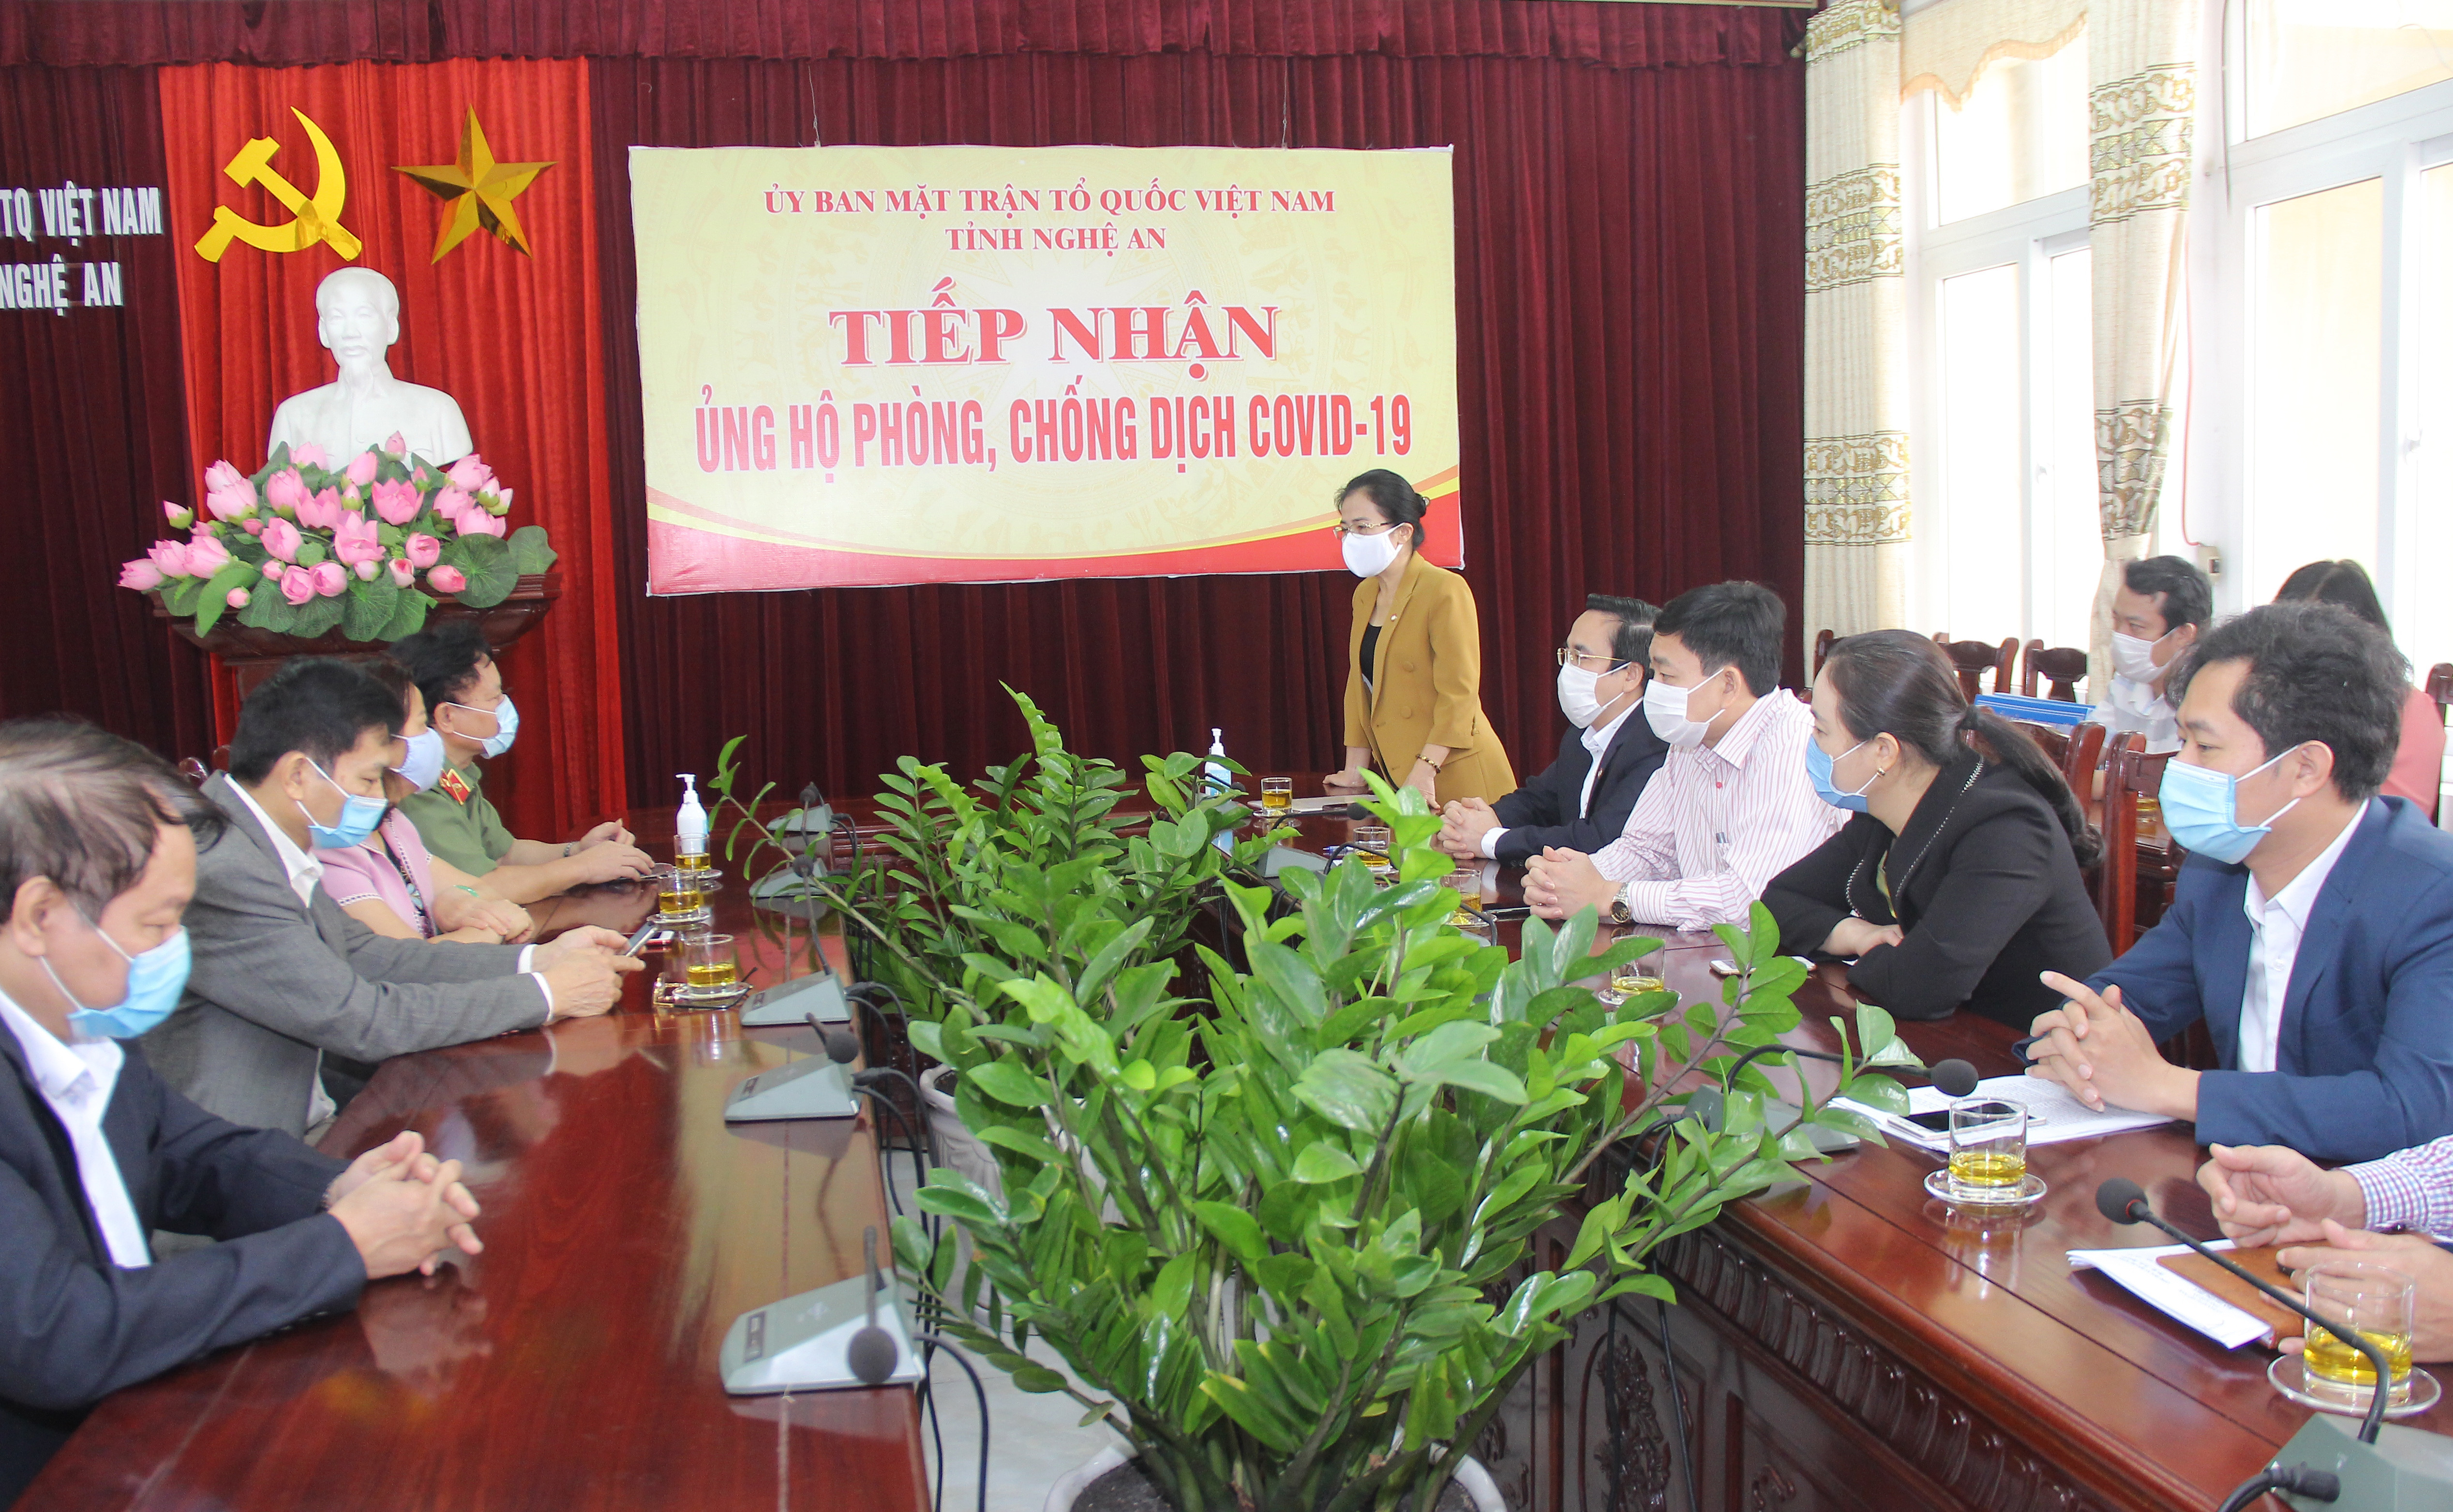 Đồng chí Võ Thị Minh Sinh tiếp nhận sự ủng hộ của bà Vương Thị Châu, xóm 8, xã Nghi Ân, thành phố Vinh tổng 1,1 triệu đồng. Ảnh: Mai Hoa